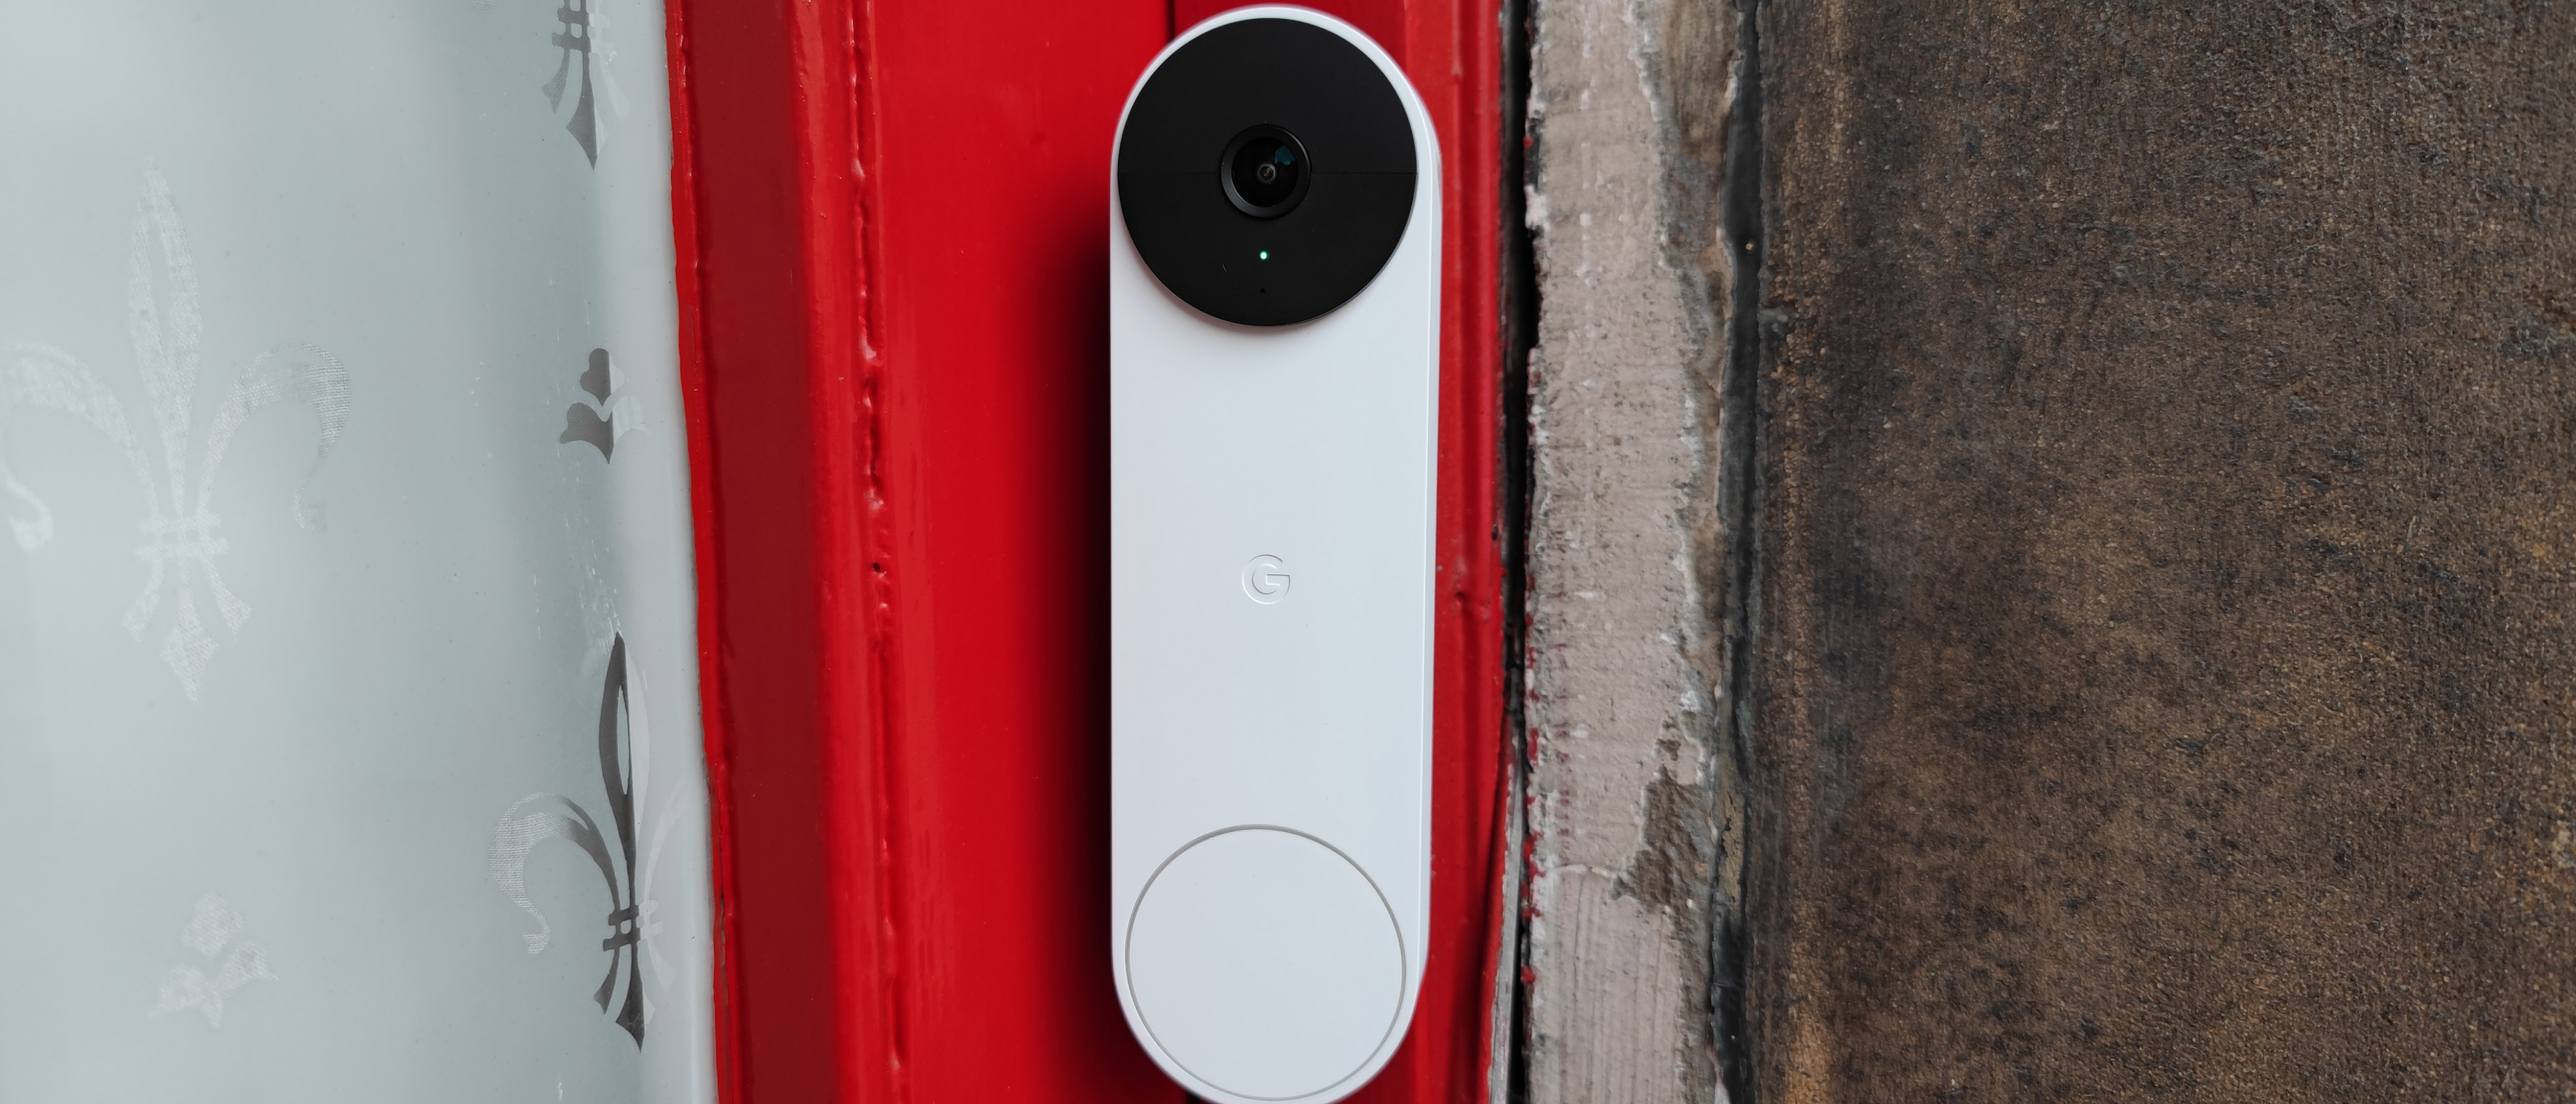 download google nest doorbell